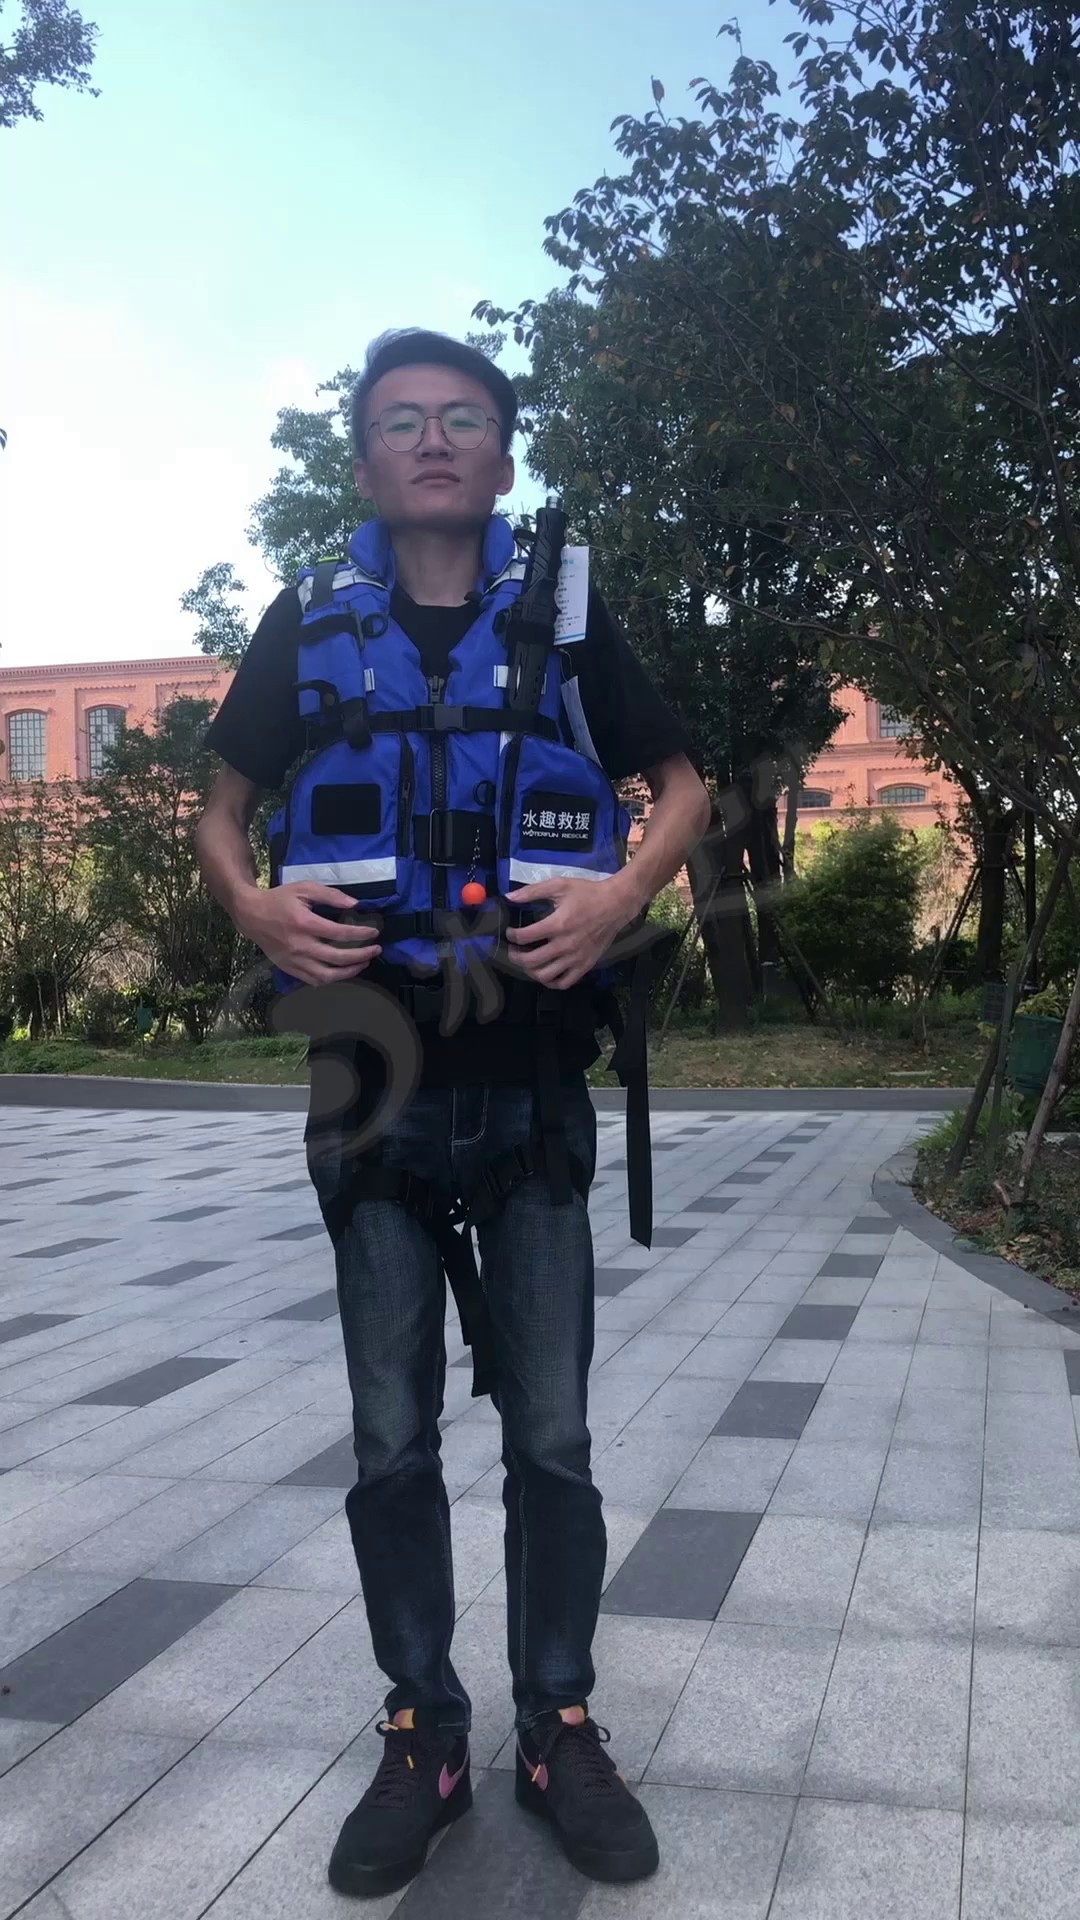 上海重型水域救生衣型号,水域救生衣